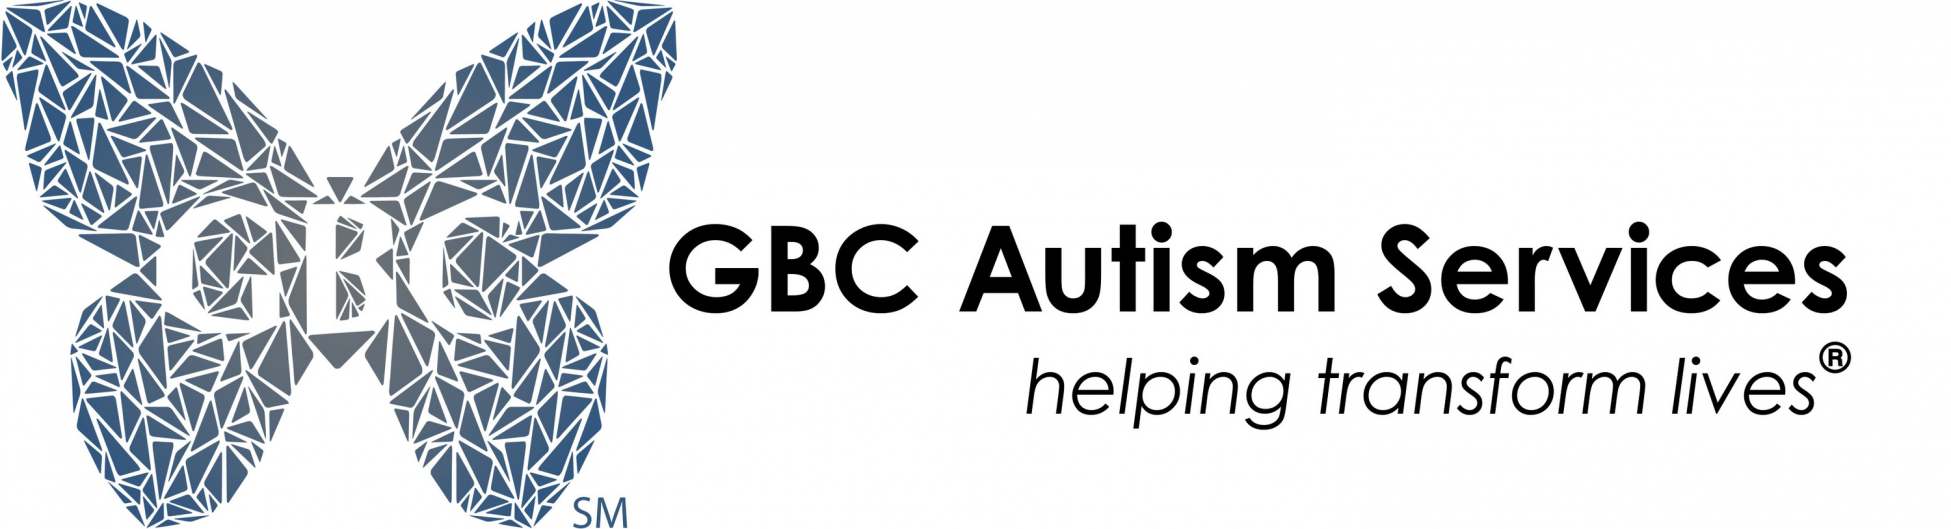 GBC Autism Services Logo